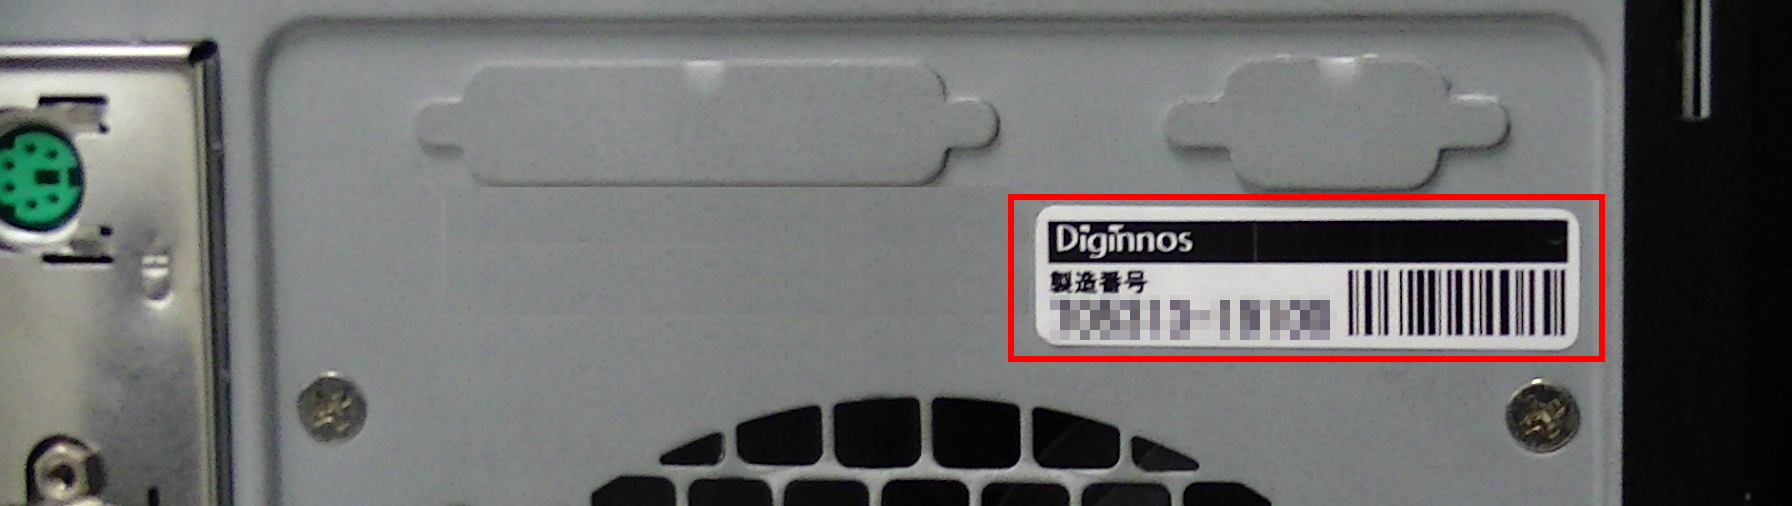 THIRDWAVE ・ Diginnos ・ Prime 製造番号の記載場所について